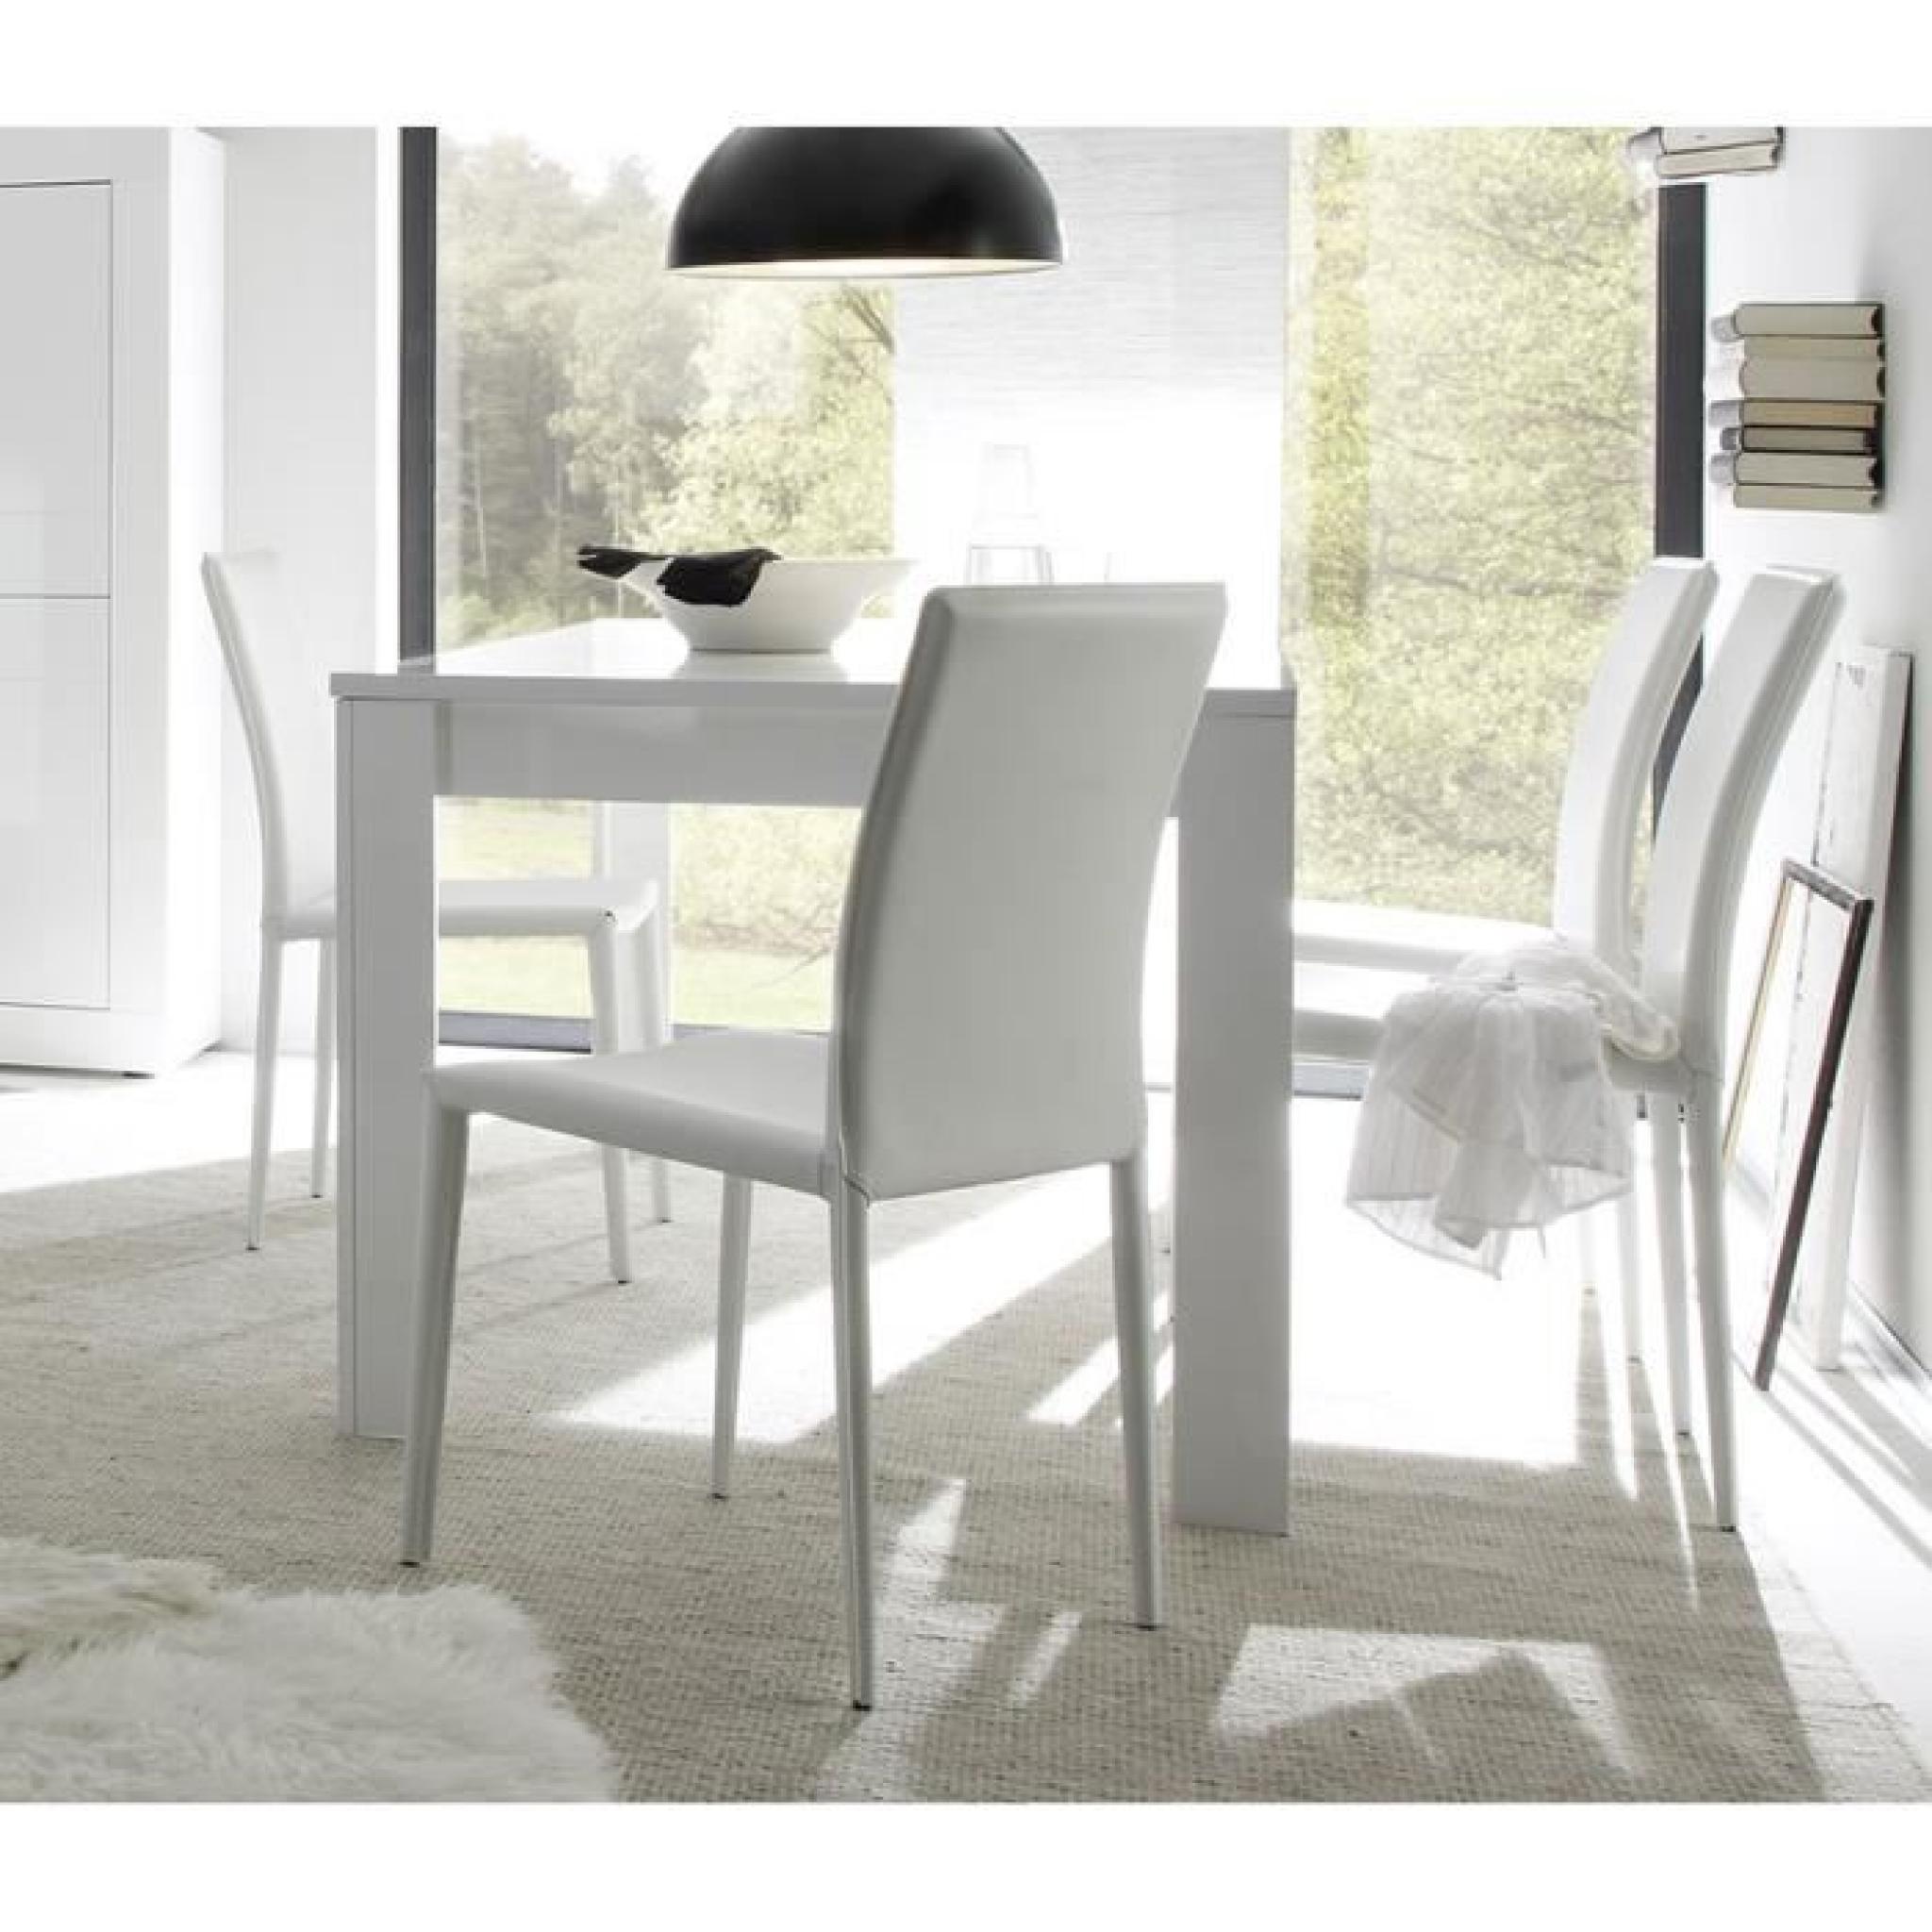 Table à manger blanc laqué design FELINO Table 160 cm rallonge 48 cm